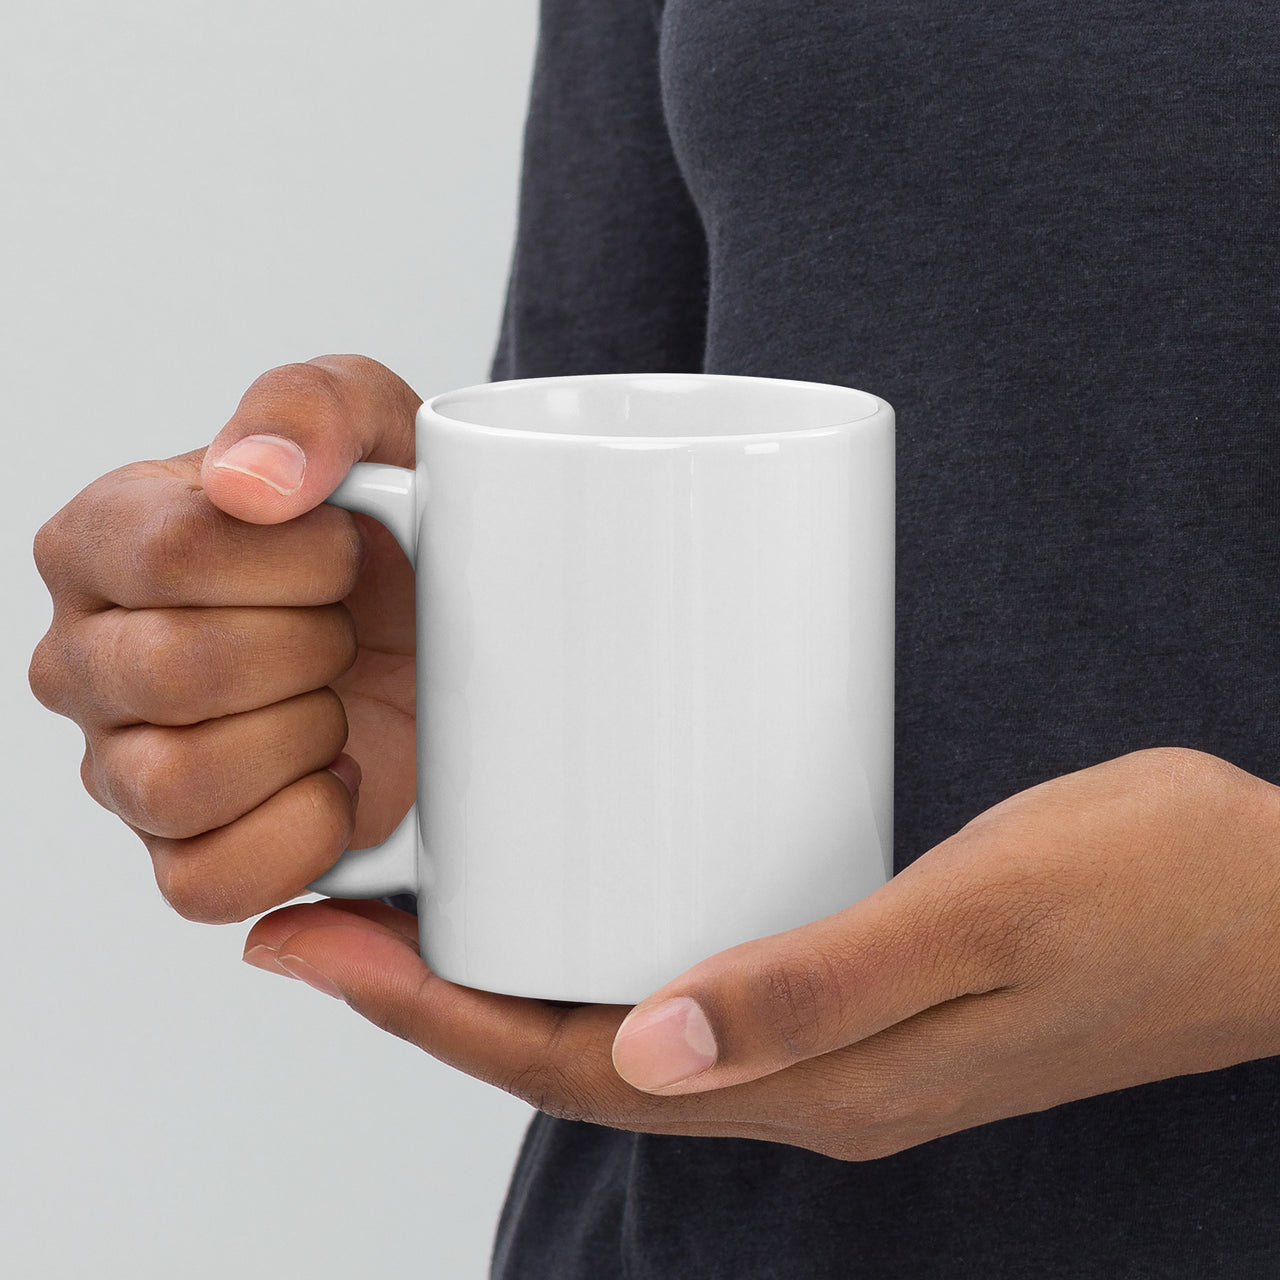 Size Matters Coffee mug